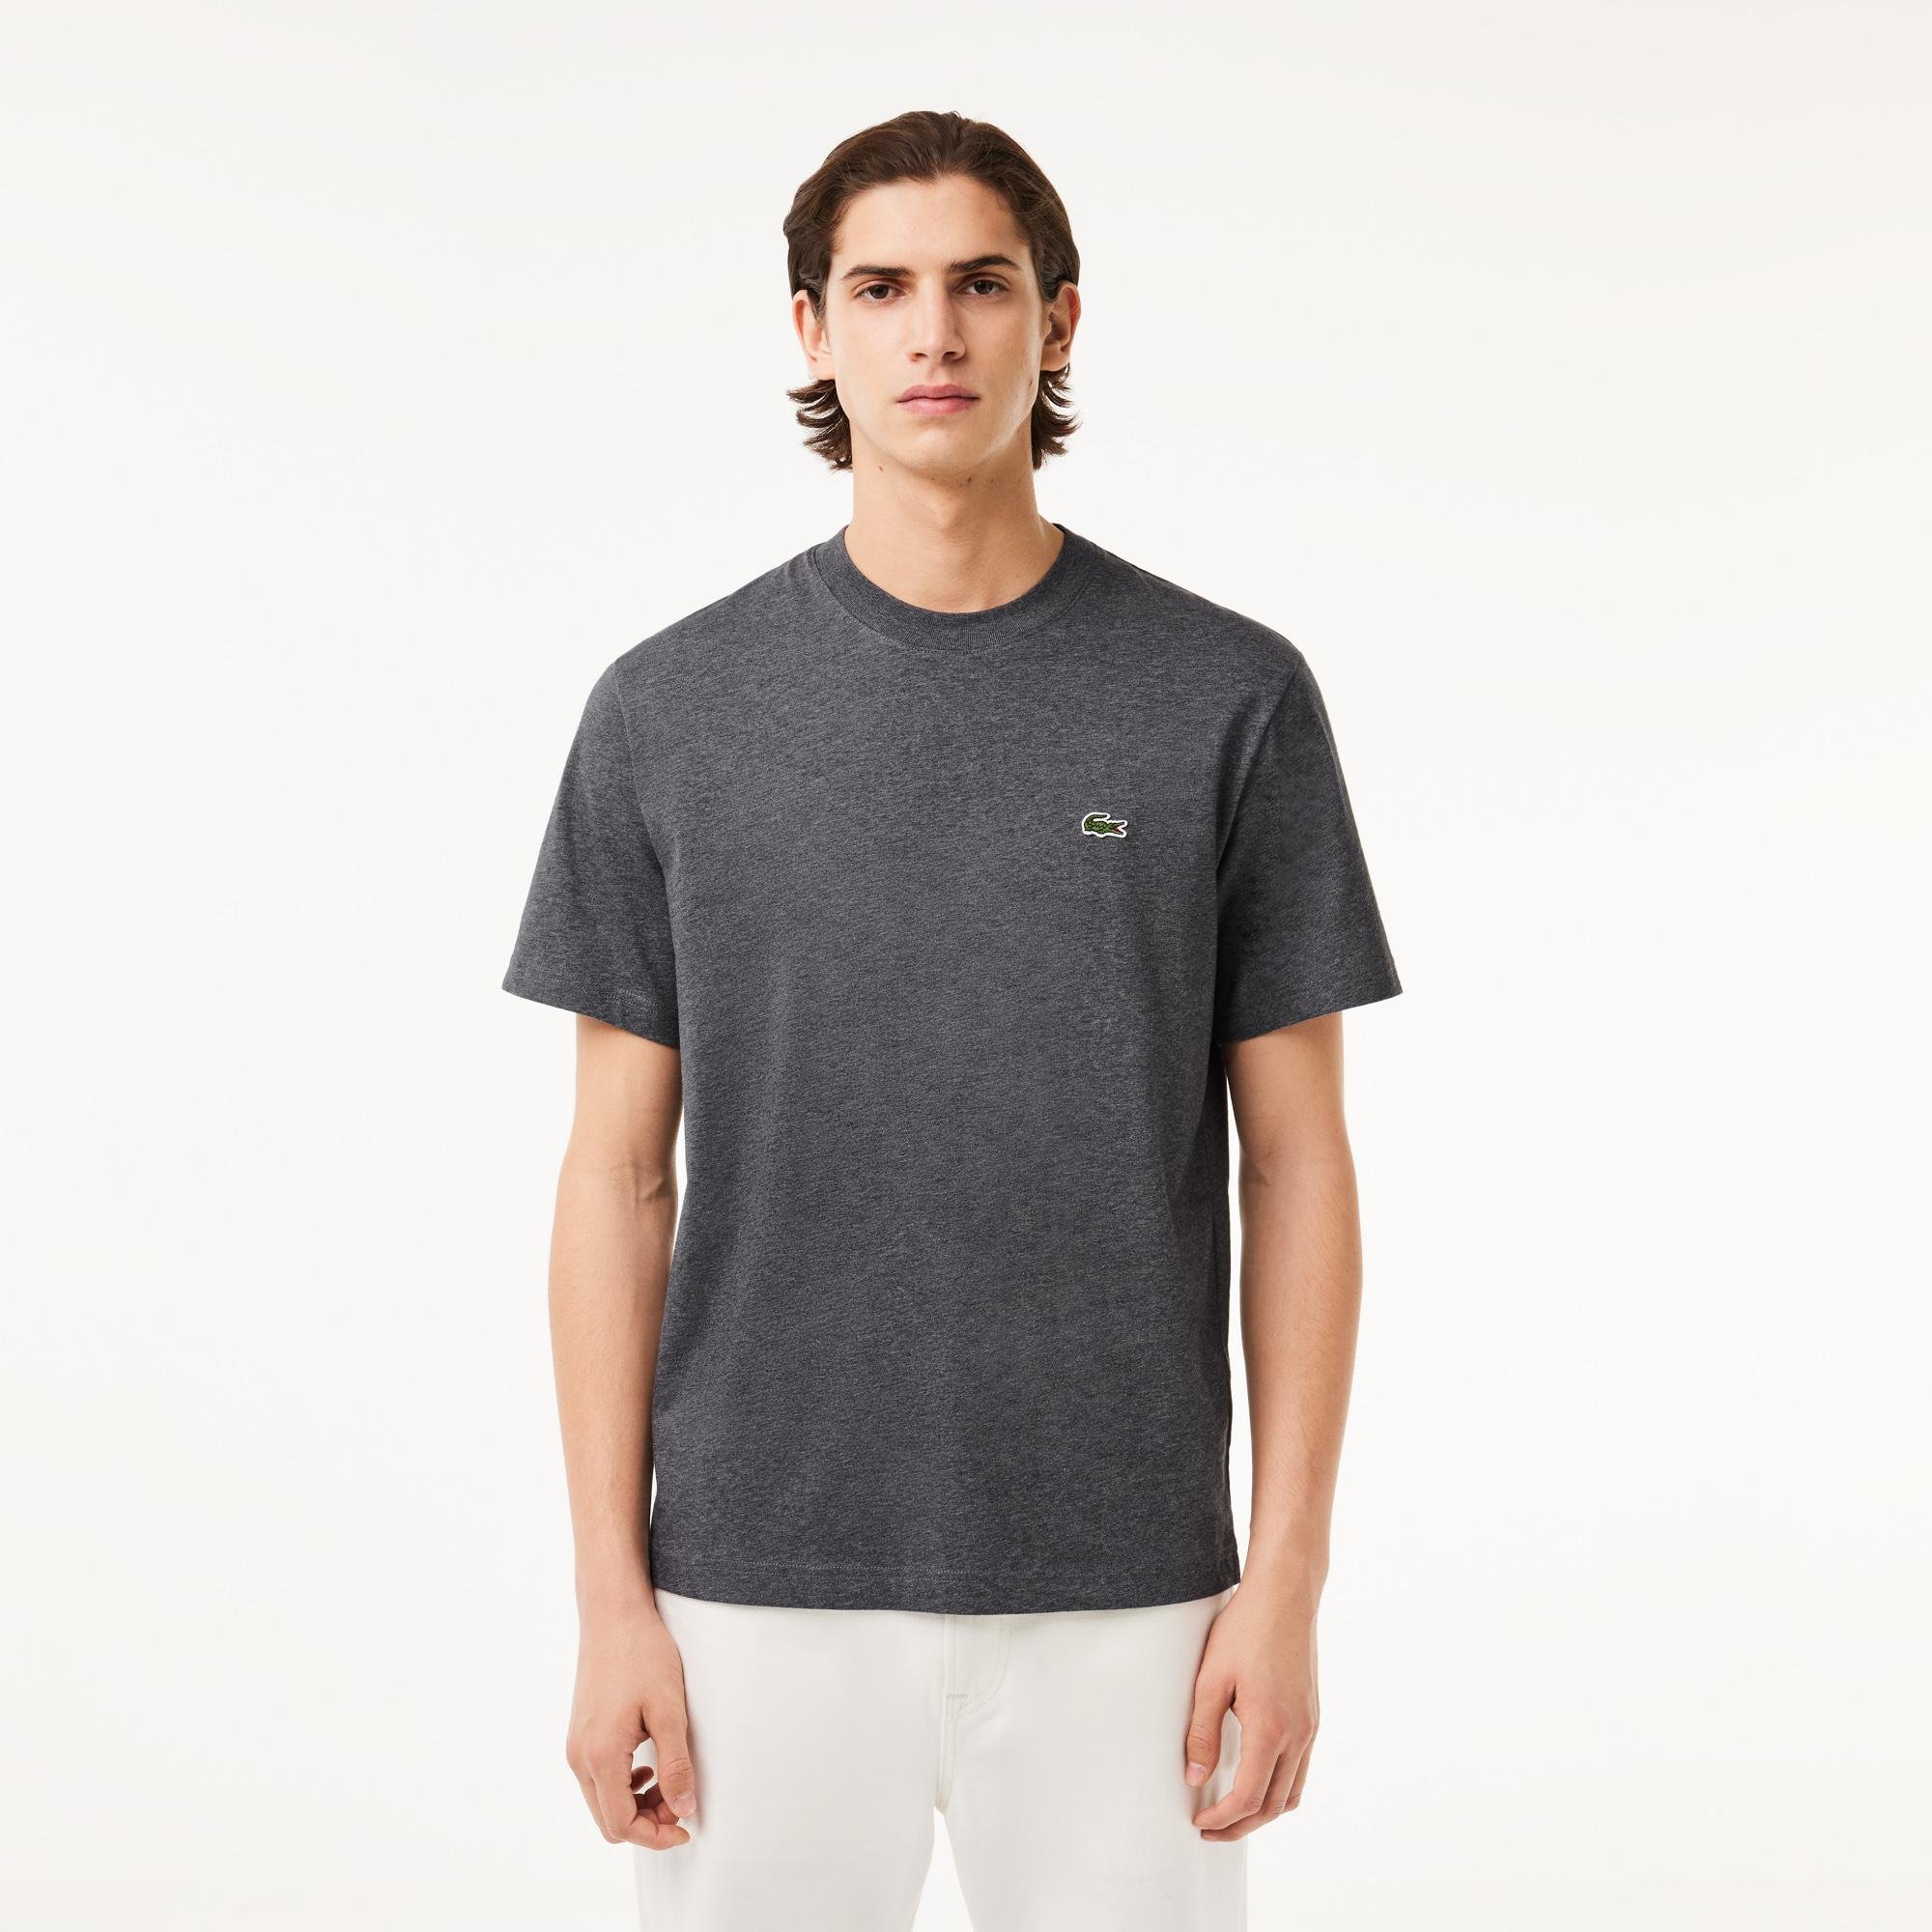 Lacoste Men's Classic Fit Cotton Jersey T-shirt